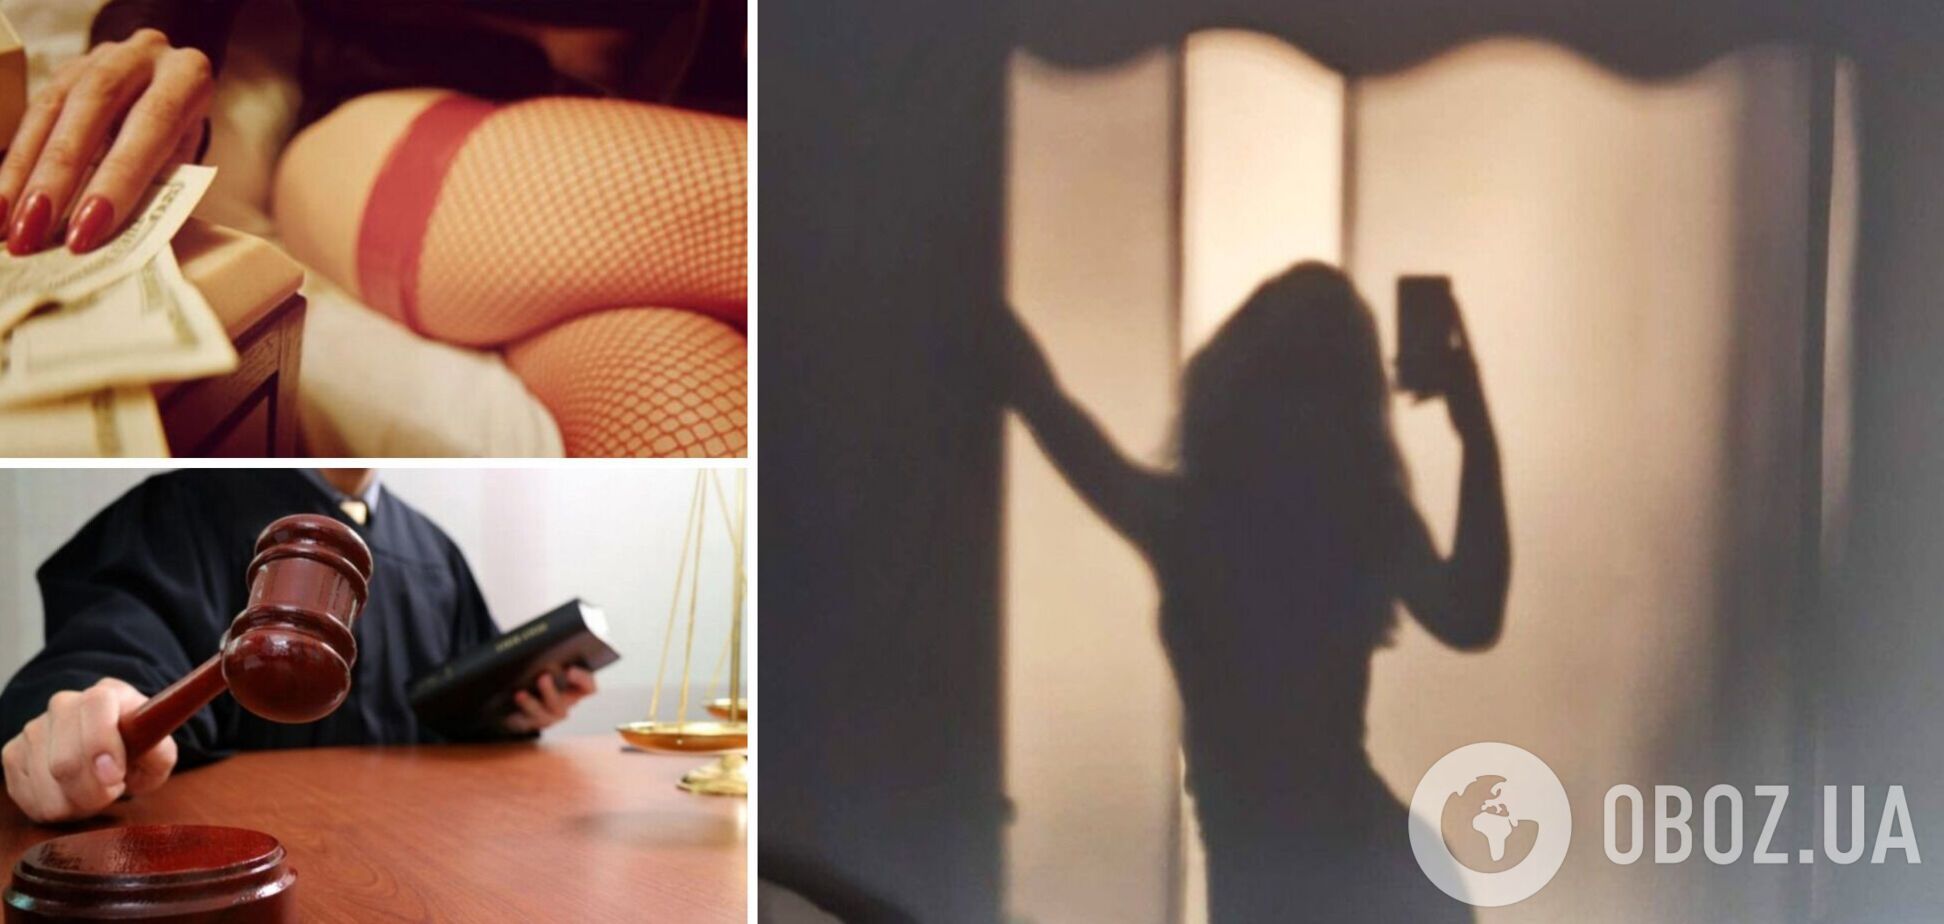 Суд вынес приговор харьковчанке, которая продавала в соцсети свои интимные фото